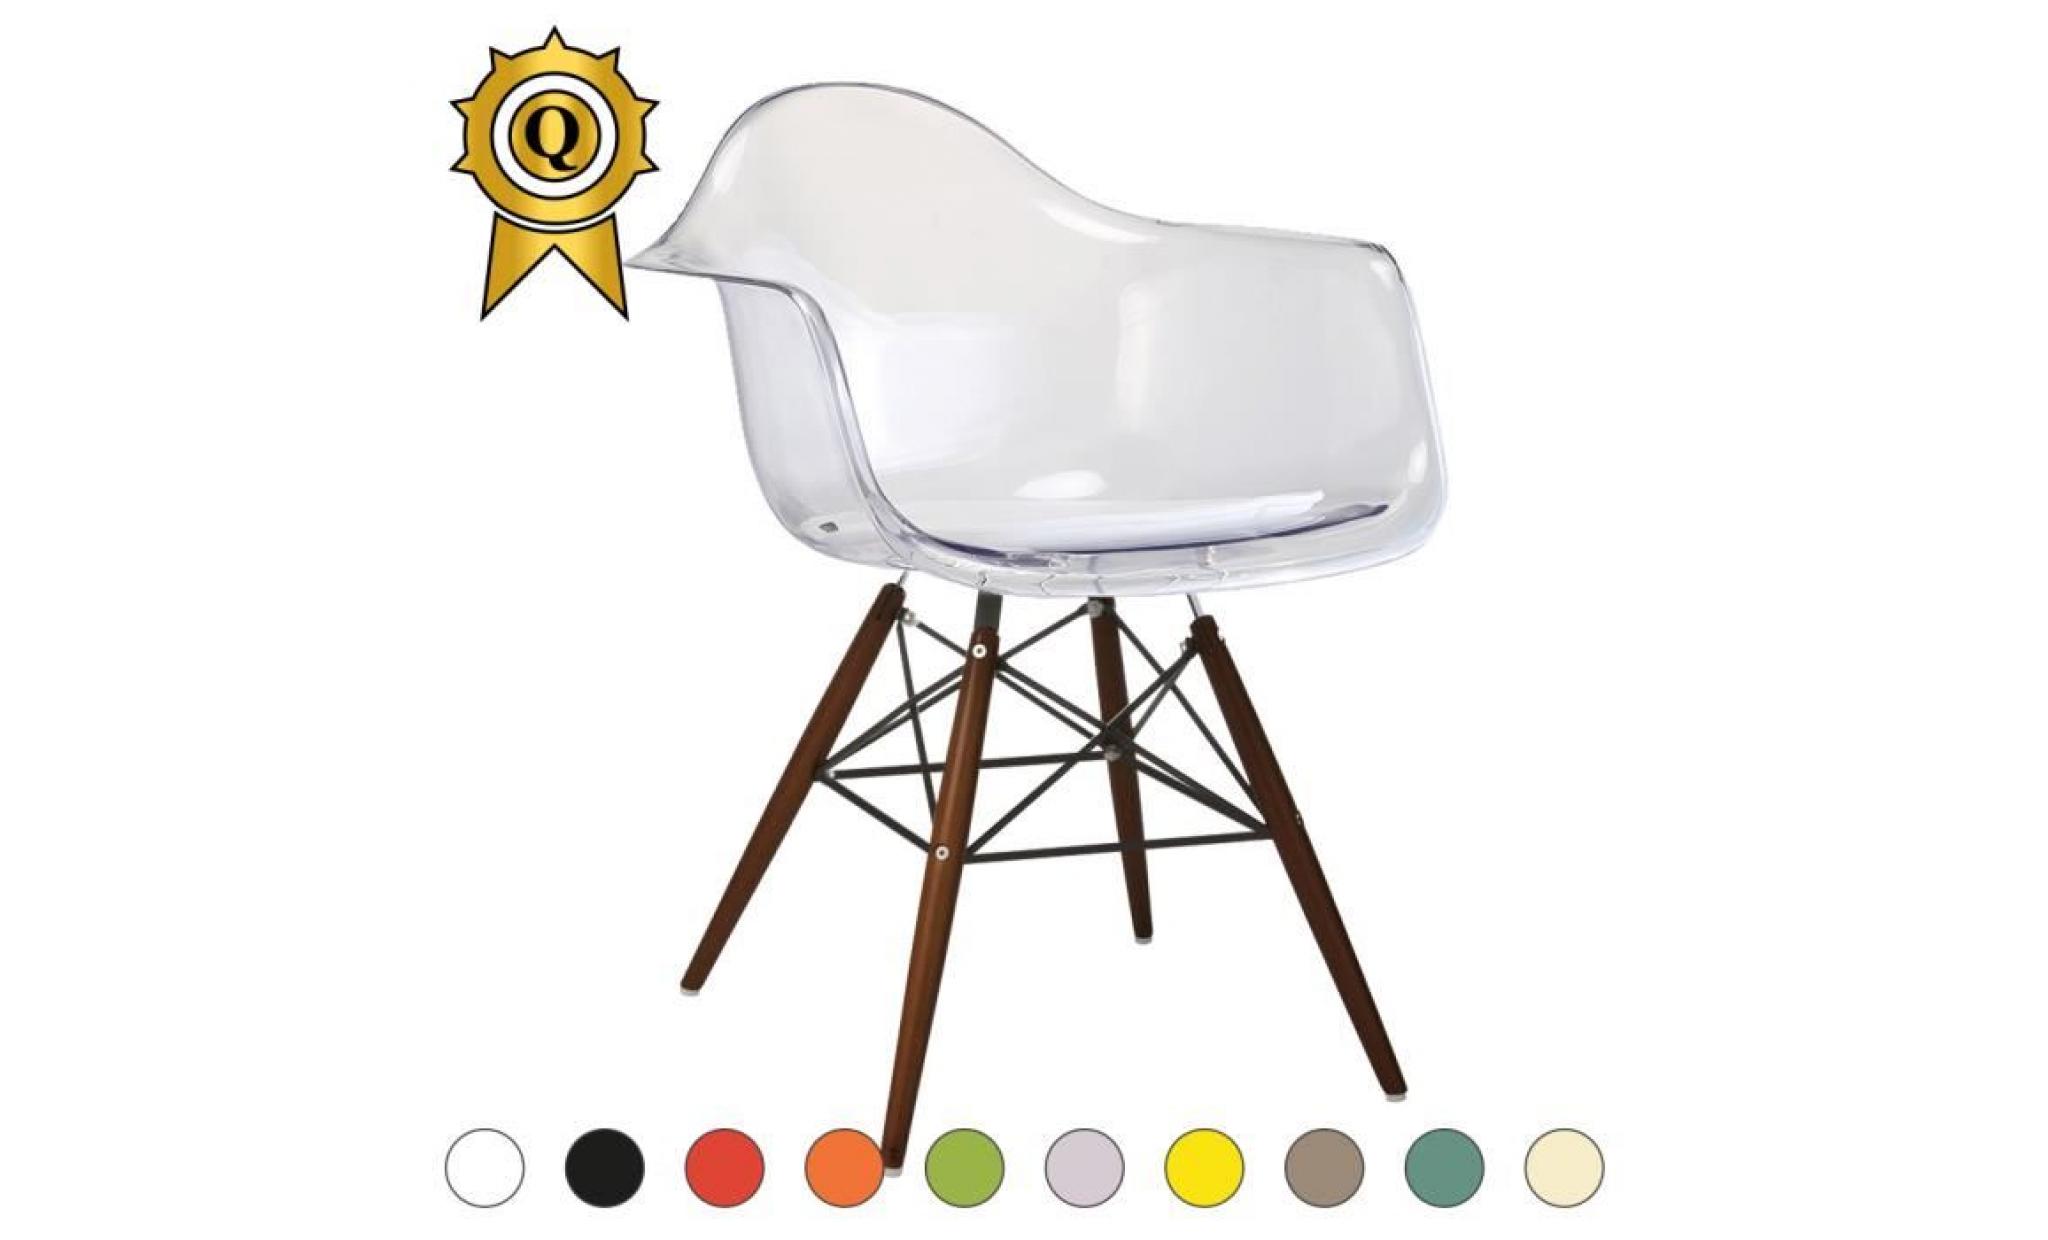 1 x fauteuil design retro style charles eames daw hauteur 48cm pieds en bois vernis rouge mobistyl®